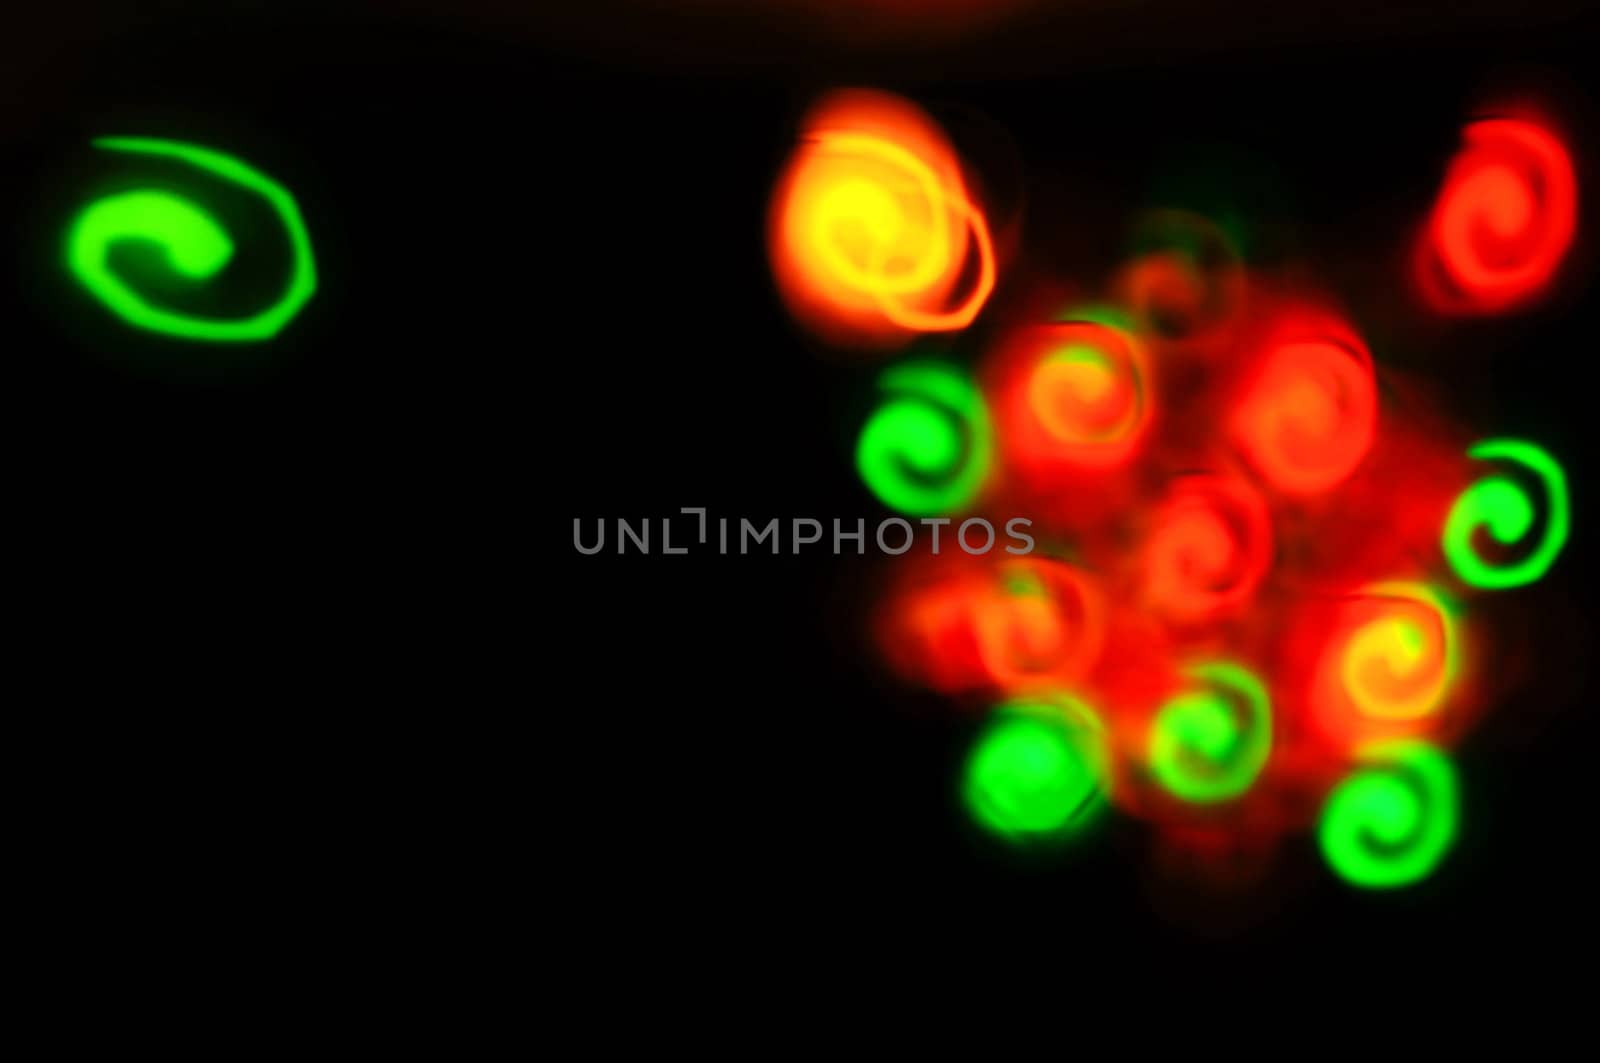 swirl shaped lights by jonasbsl